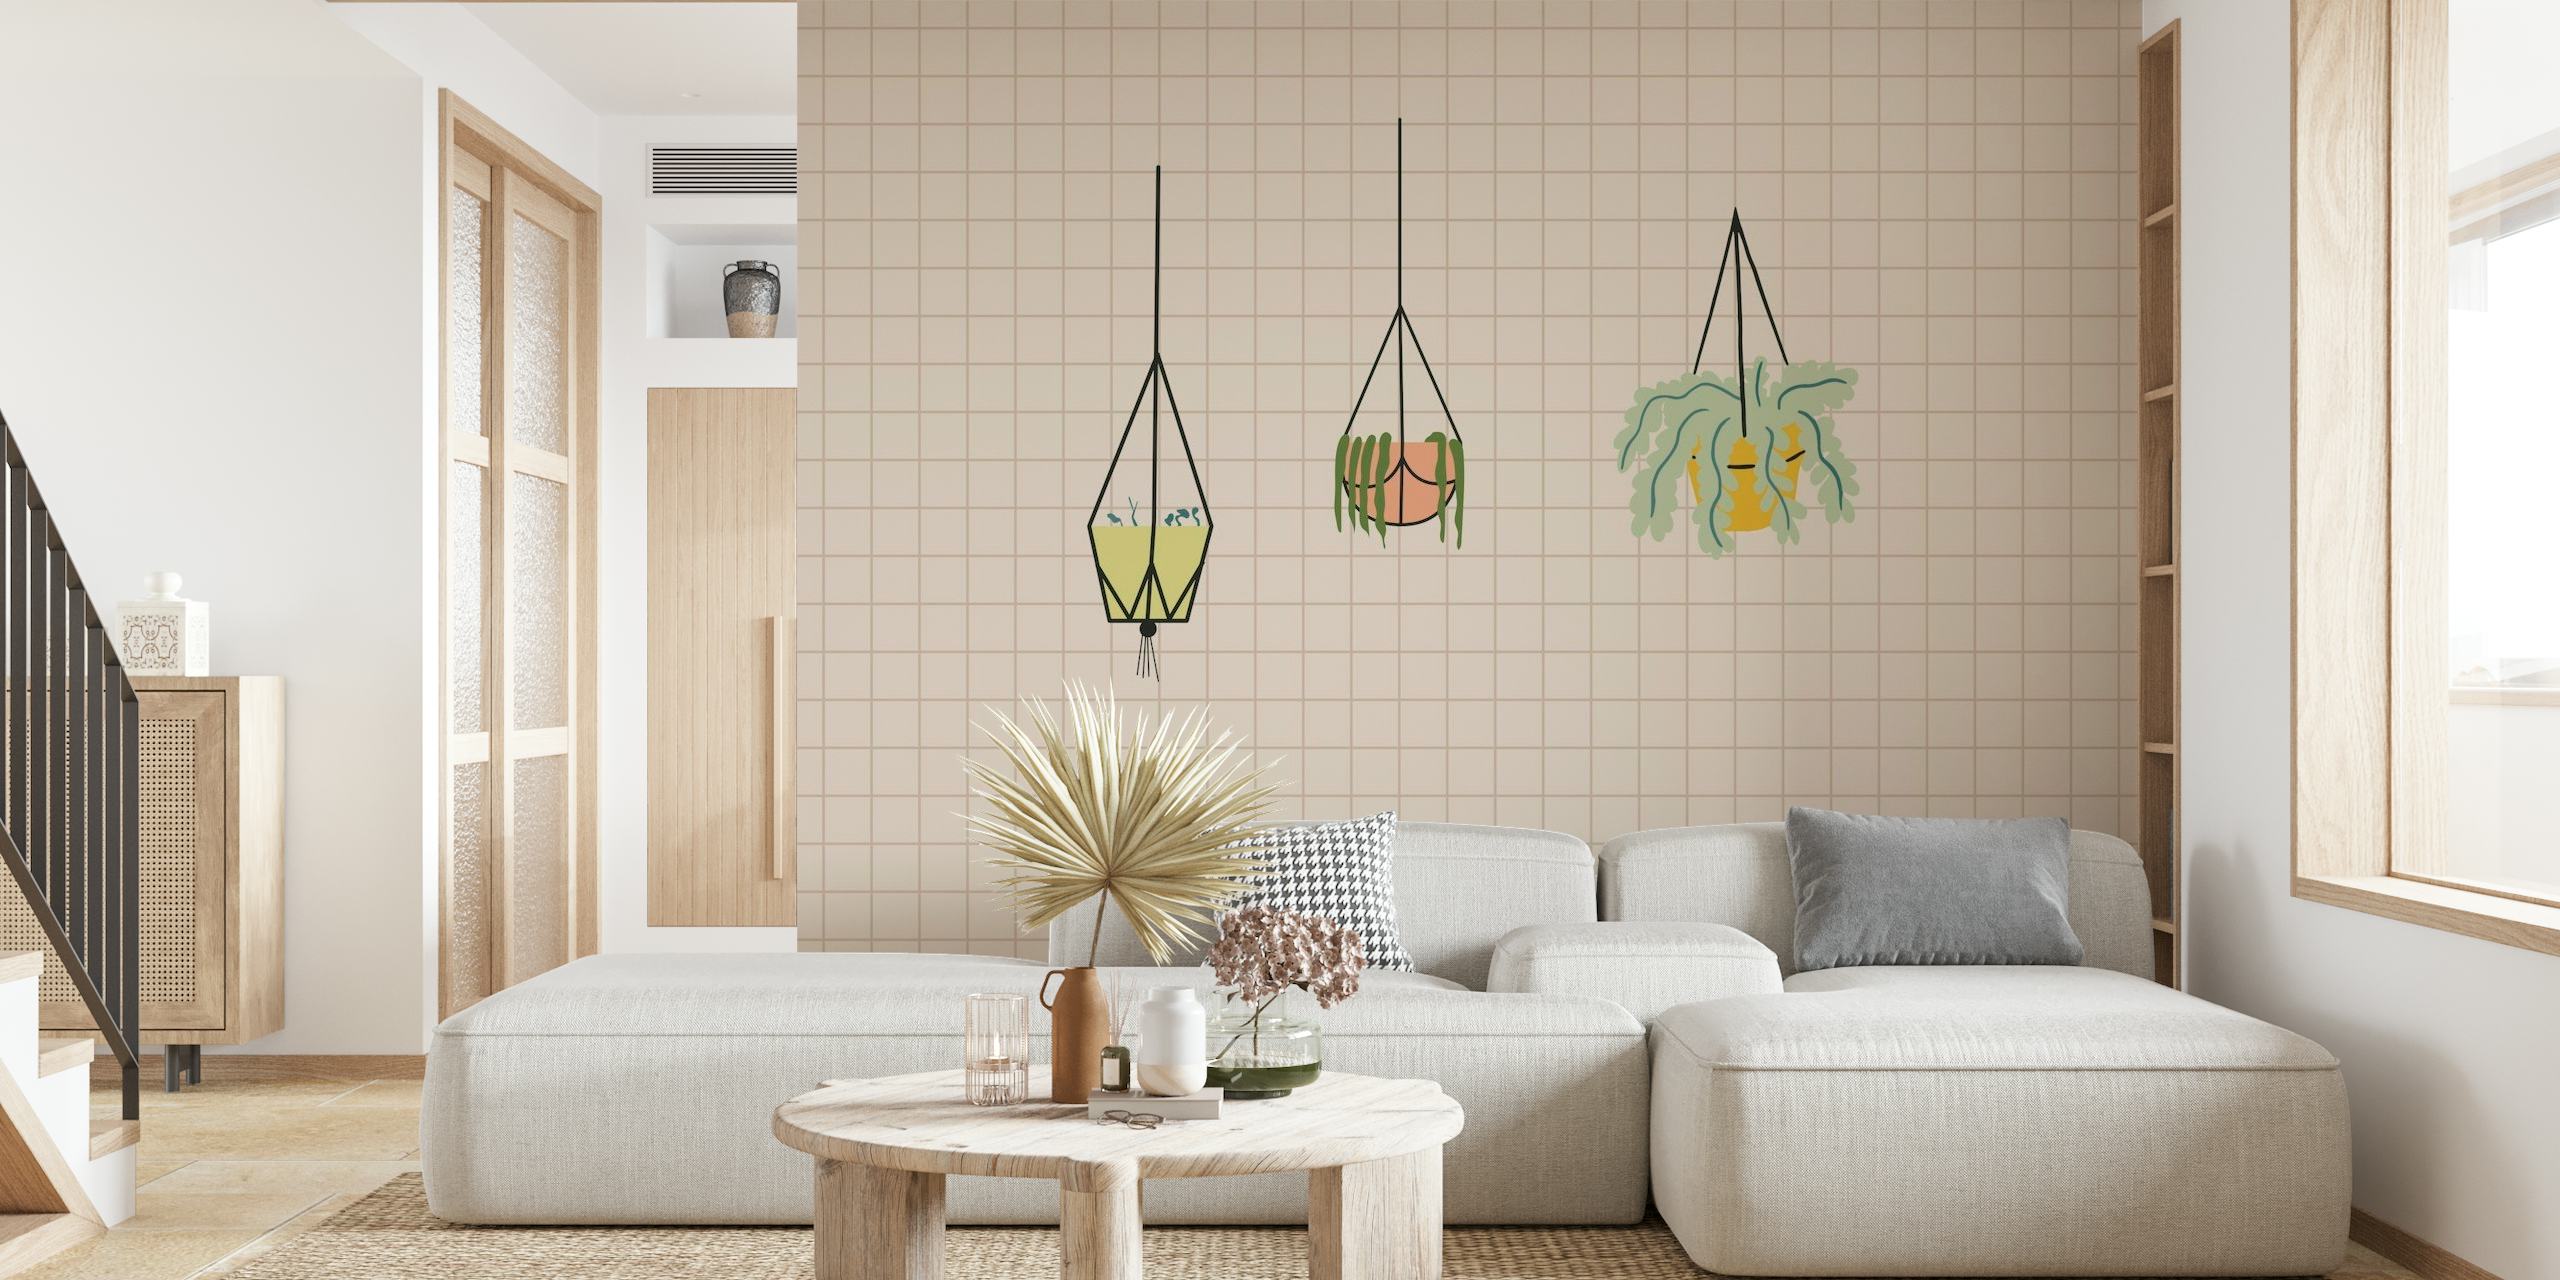 Modern Bauhaus-inspirerad tapet med skissade hängande växter i geometriska krukor på en kaklad rutnätsbakgrund